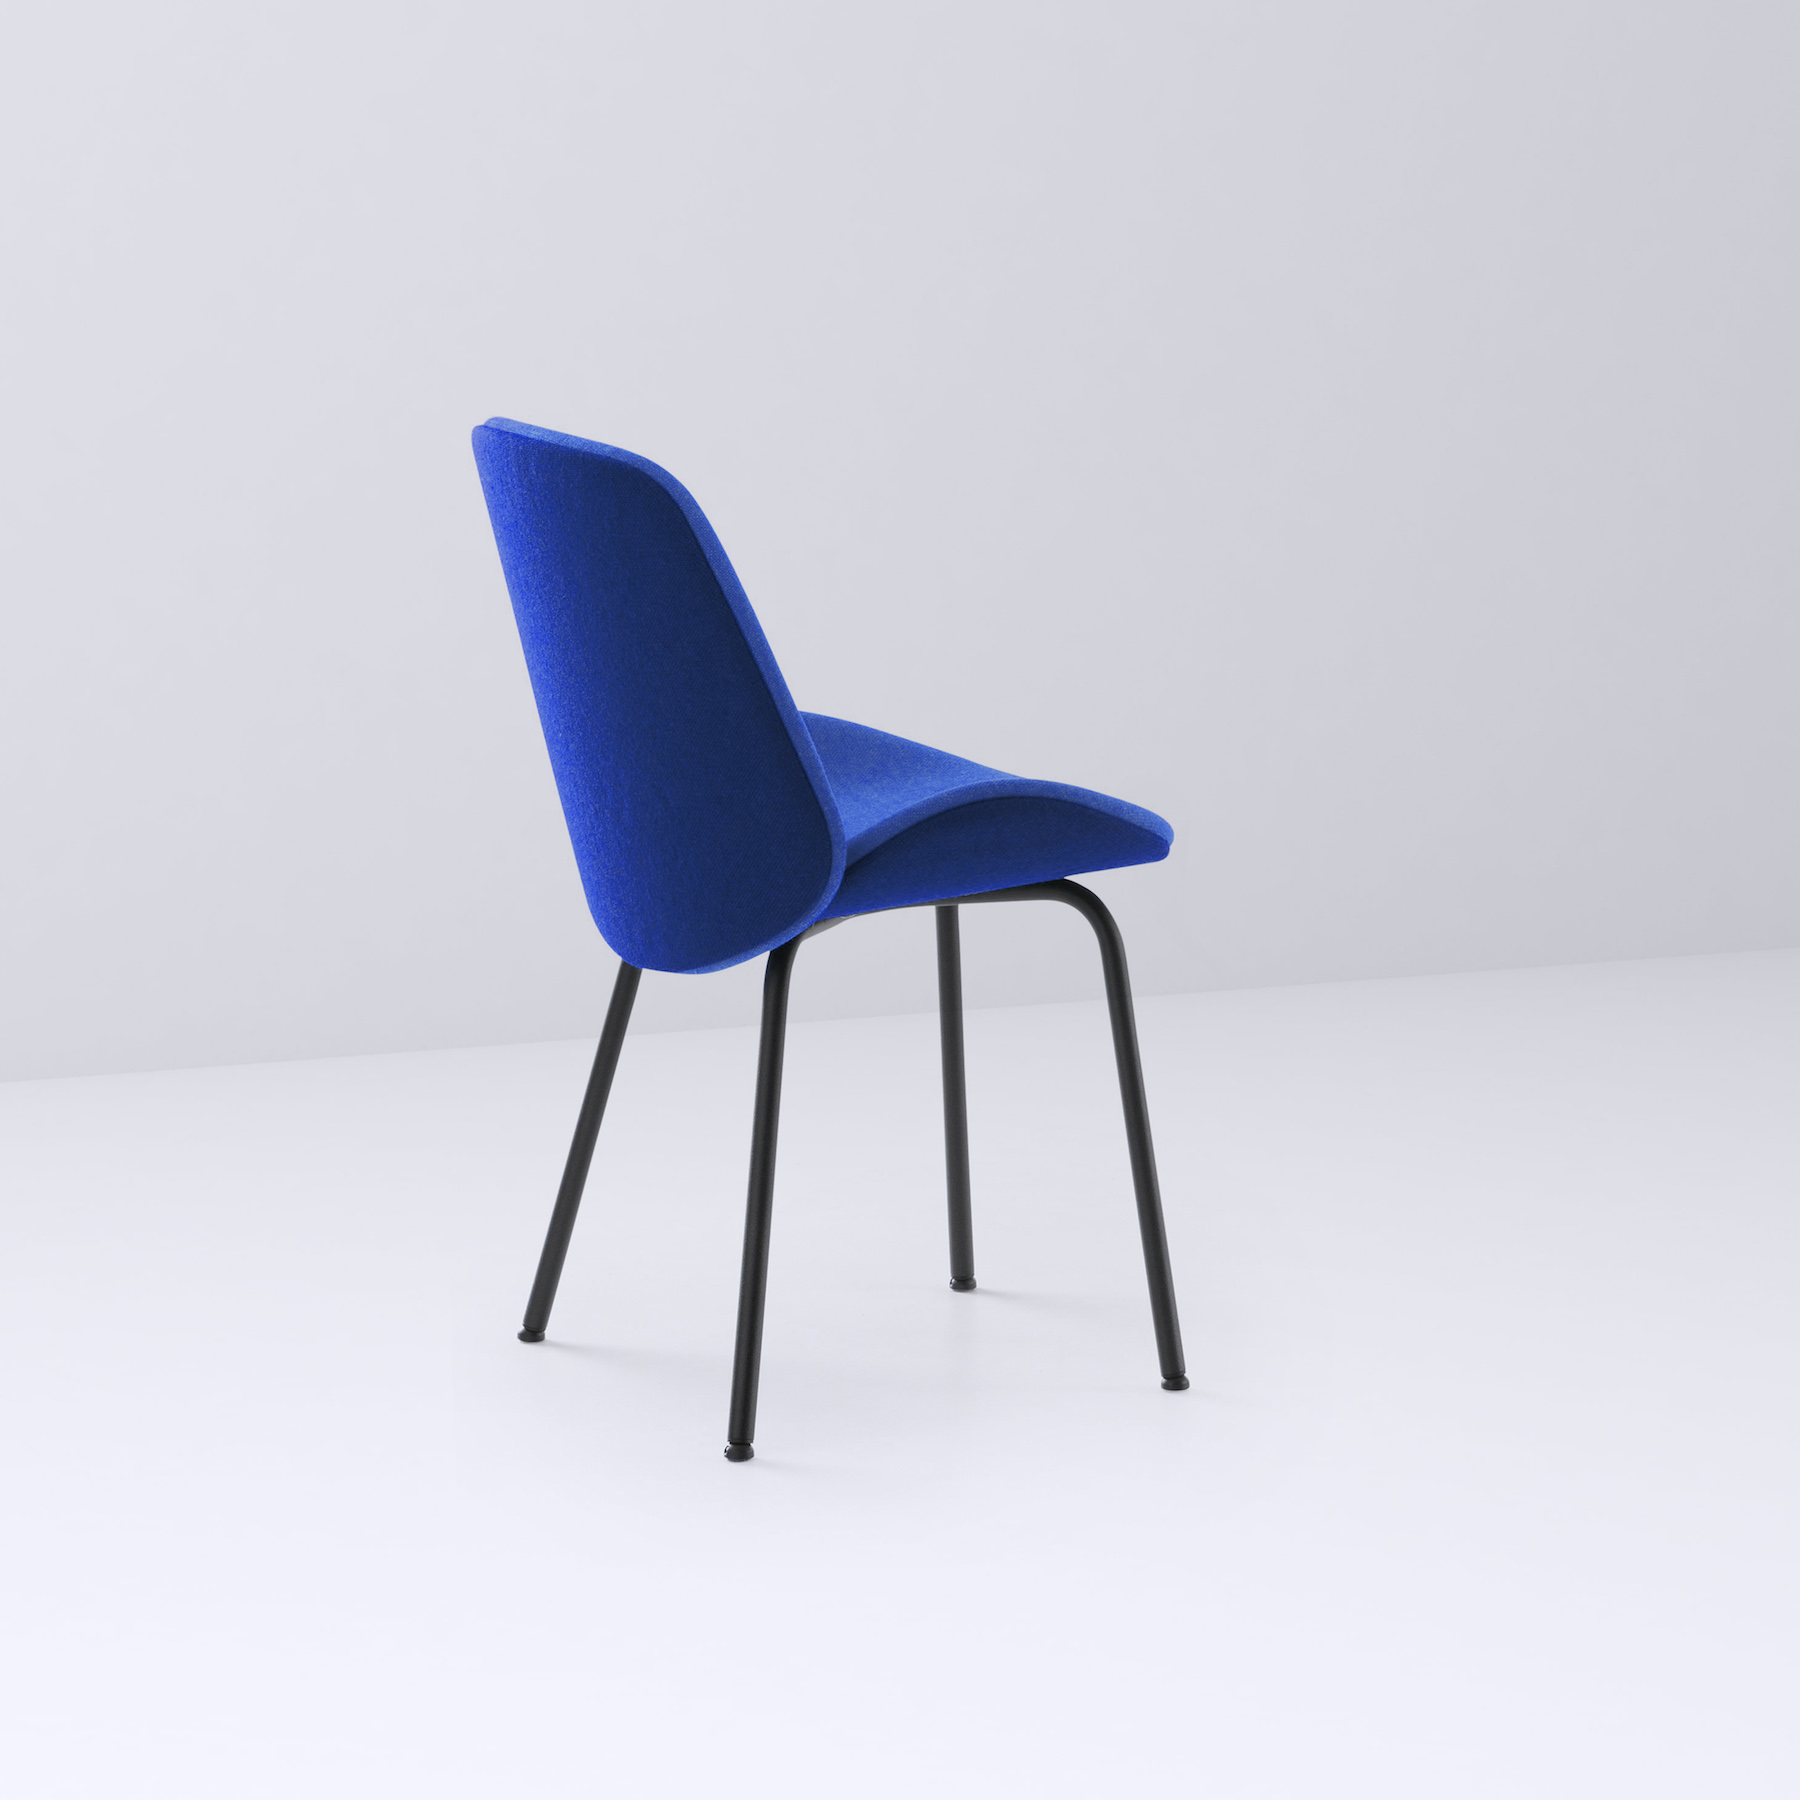 Nihan Chair by Bosetti Design Studio